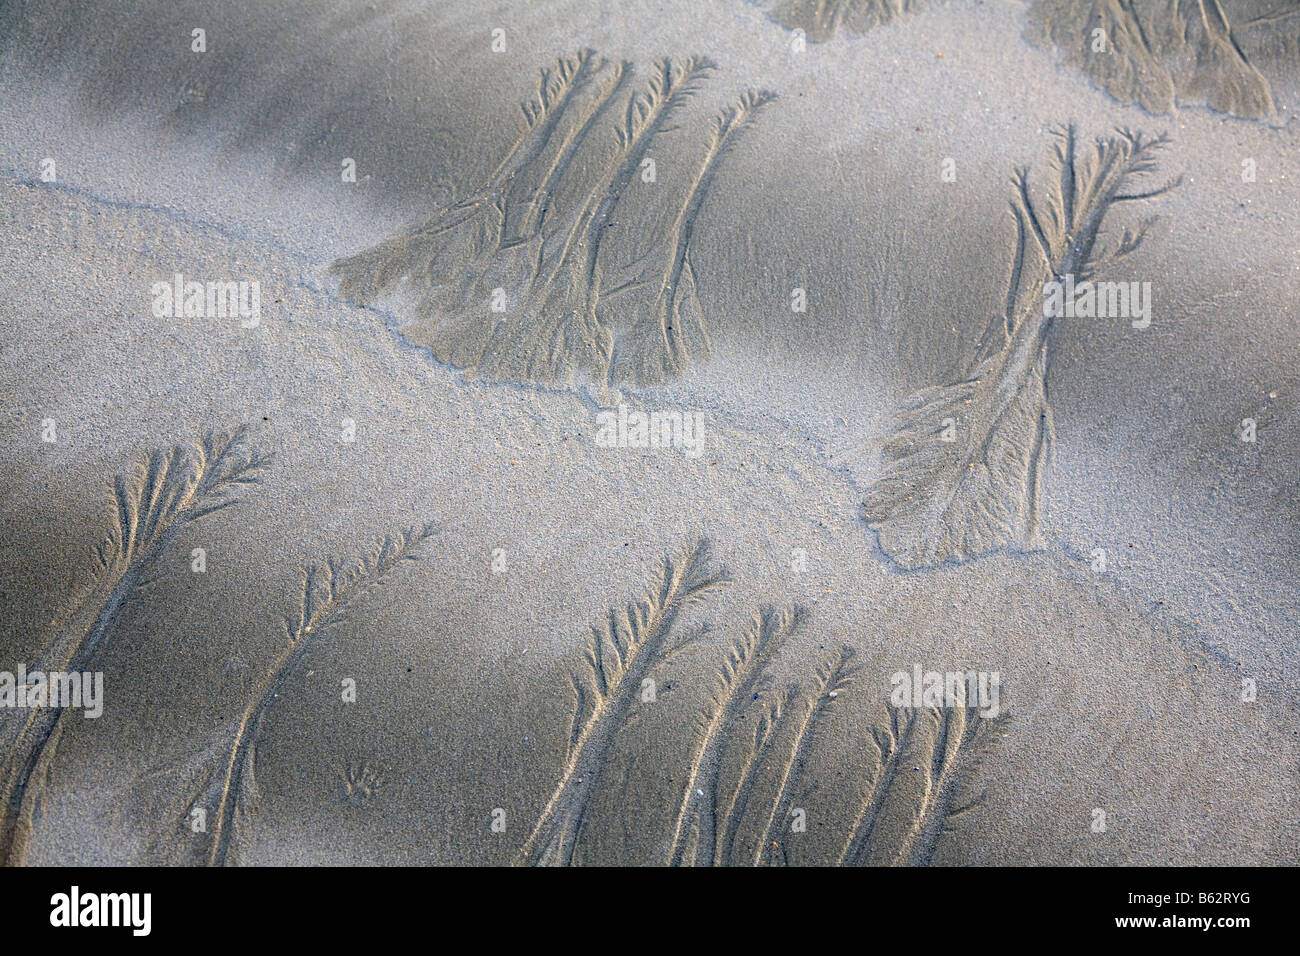 Bodenerosion durch Wasser tv an einem Sandstrand in der Grafschaft Galway, Republik von Irland. Stockfoto